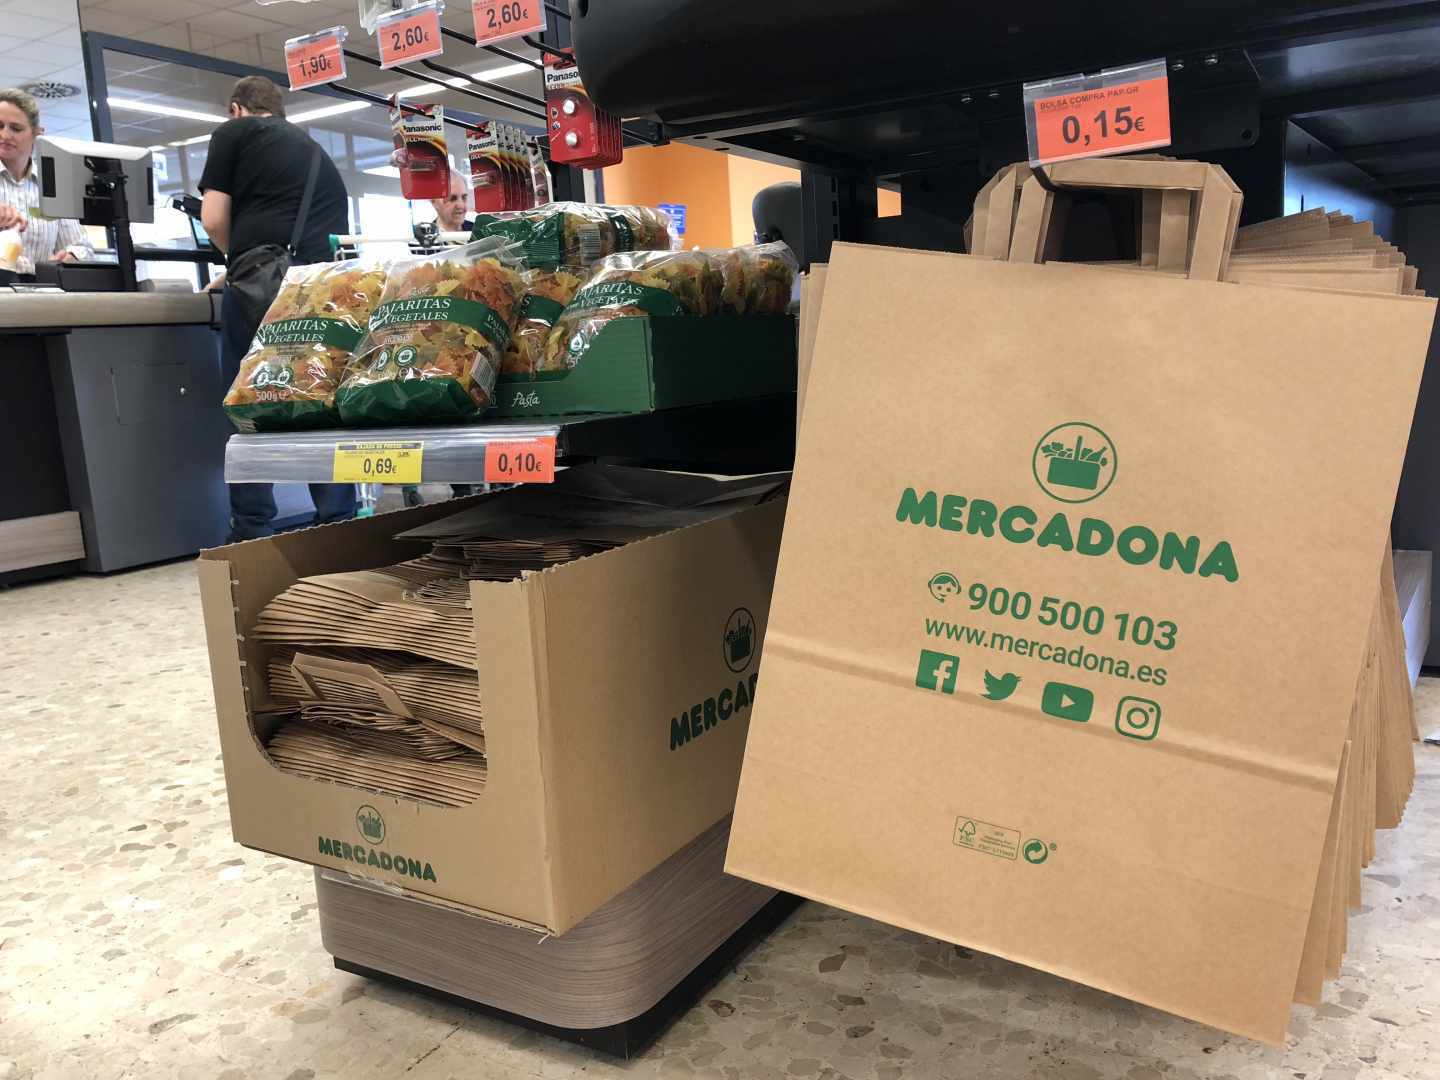 El supermercado mantendrá la cesta de rafia como alternativa reutilizable.